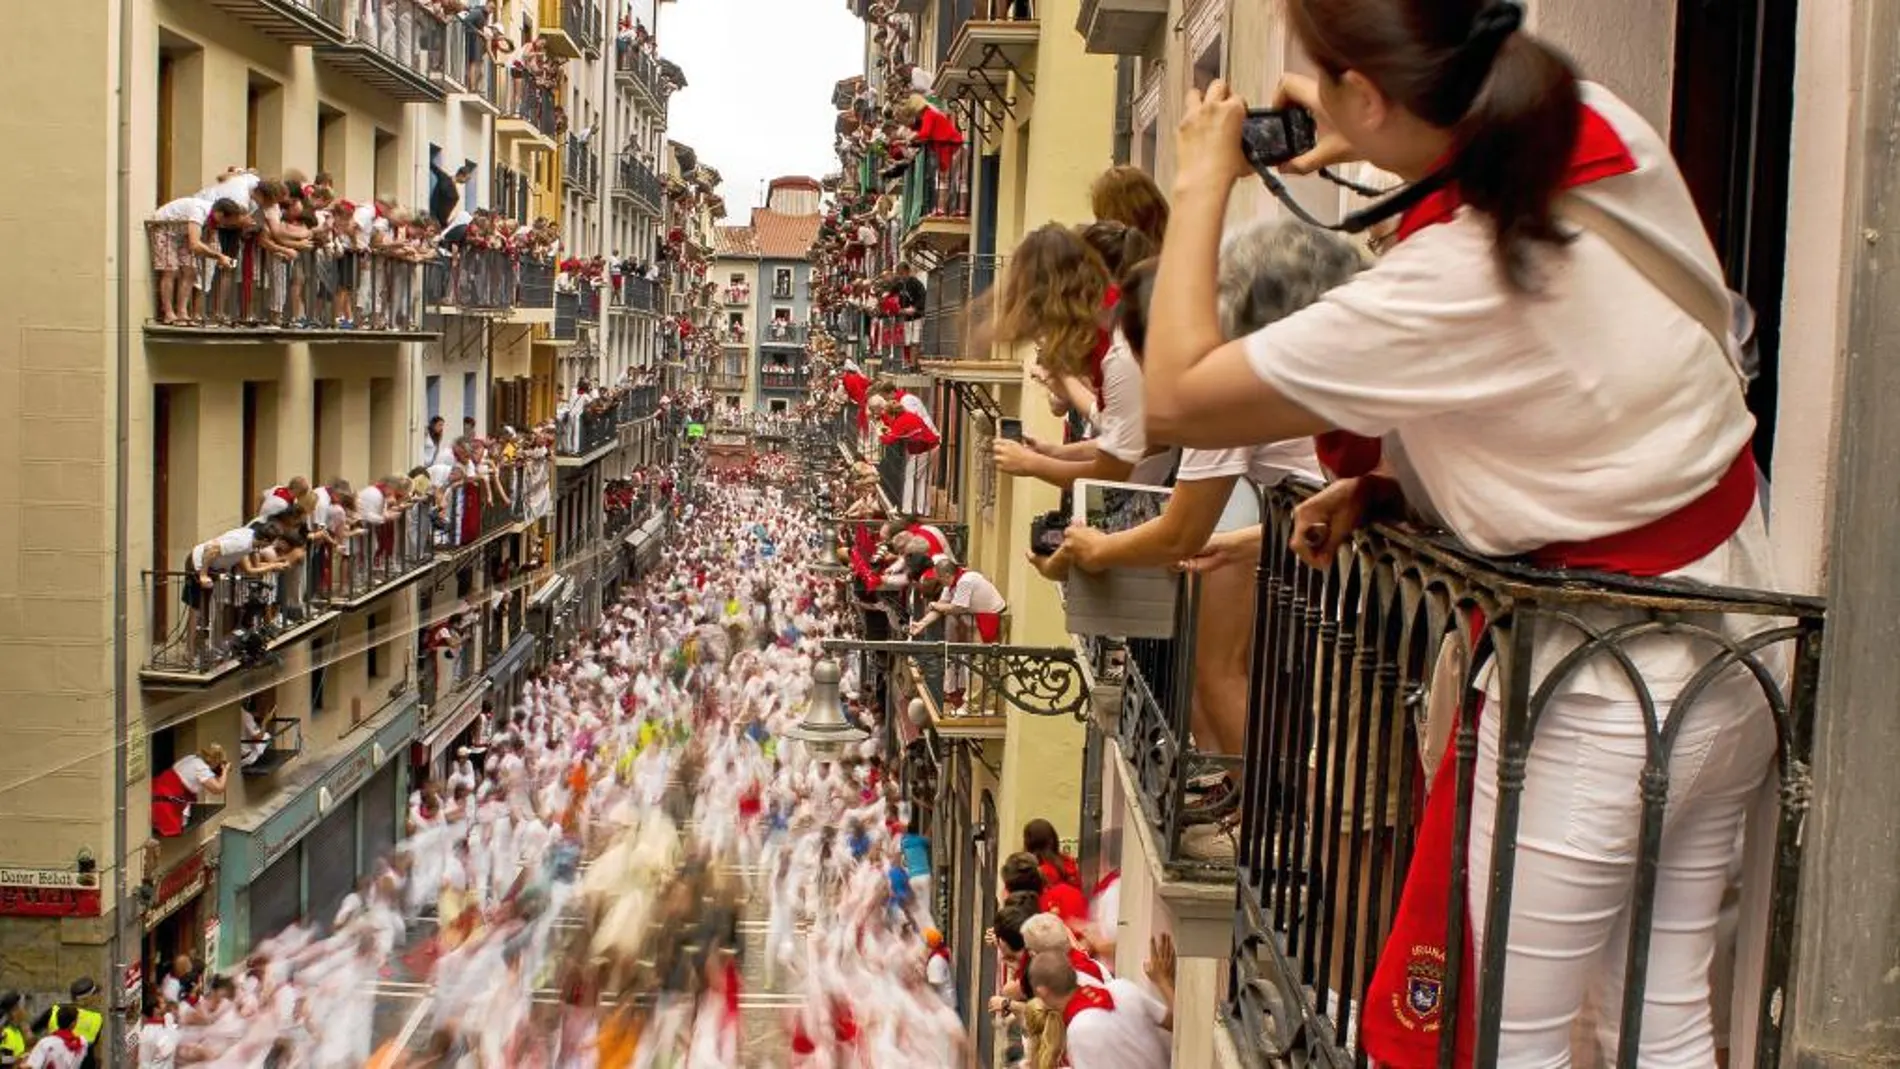 Pamplona acoge cada mañana su tradicional encierro, al que acuden corredores de todo el mundo